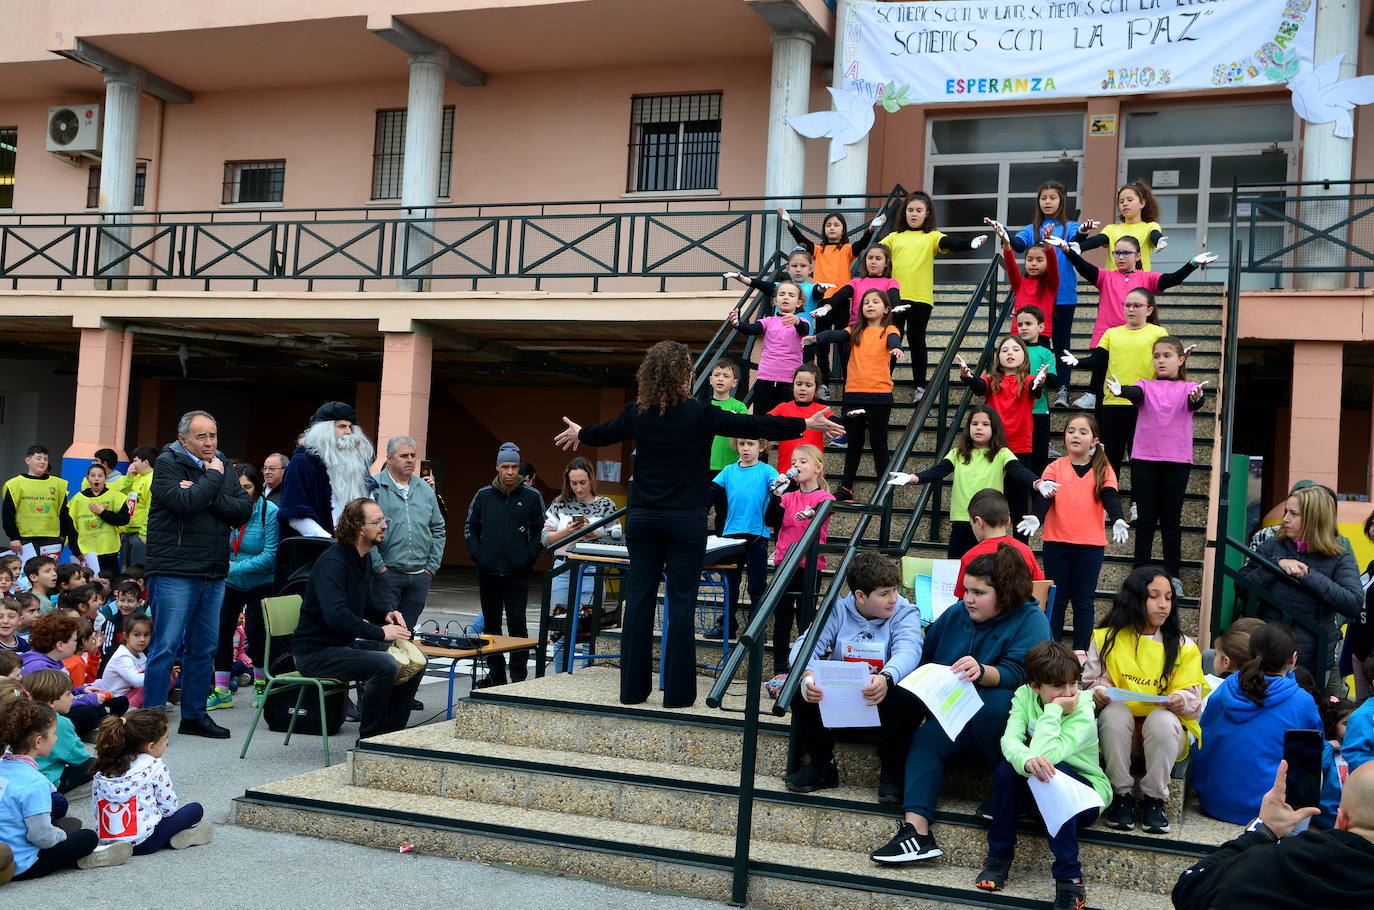 La comunidad educativa de Huétor Vega sueña con la paz